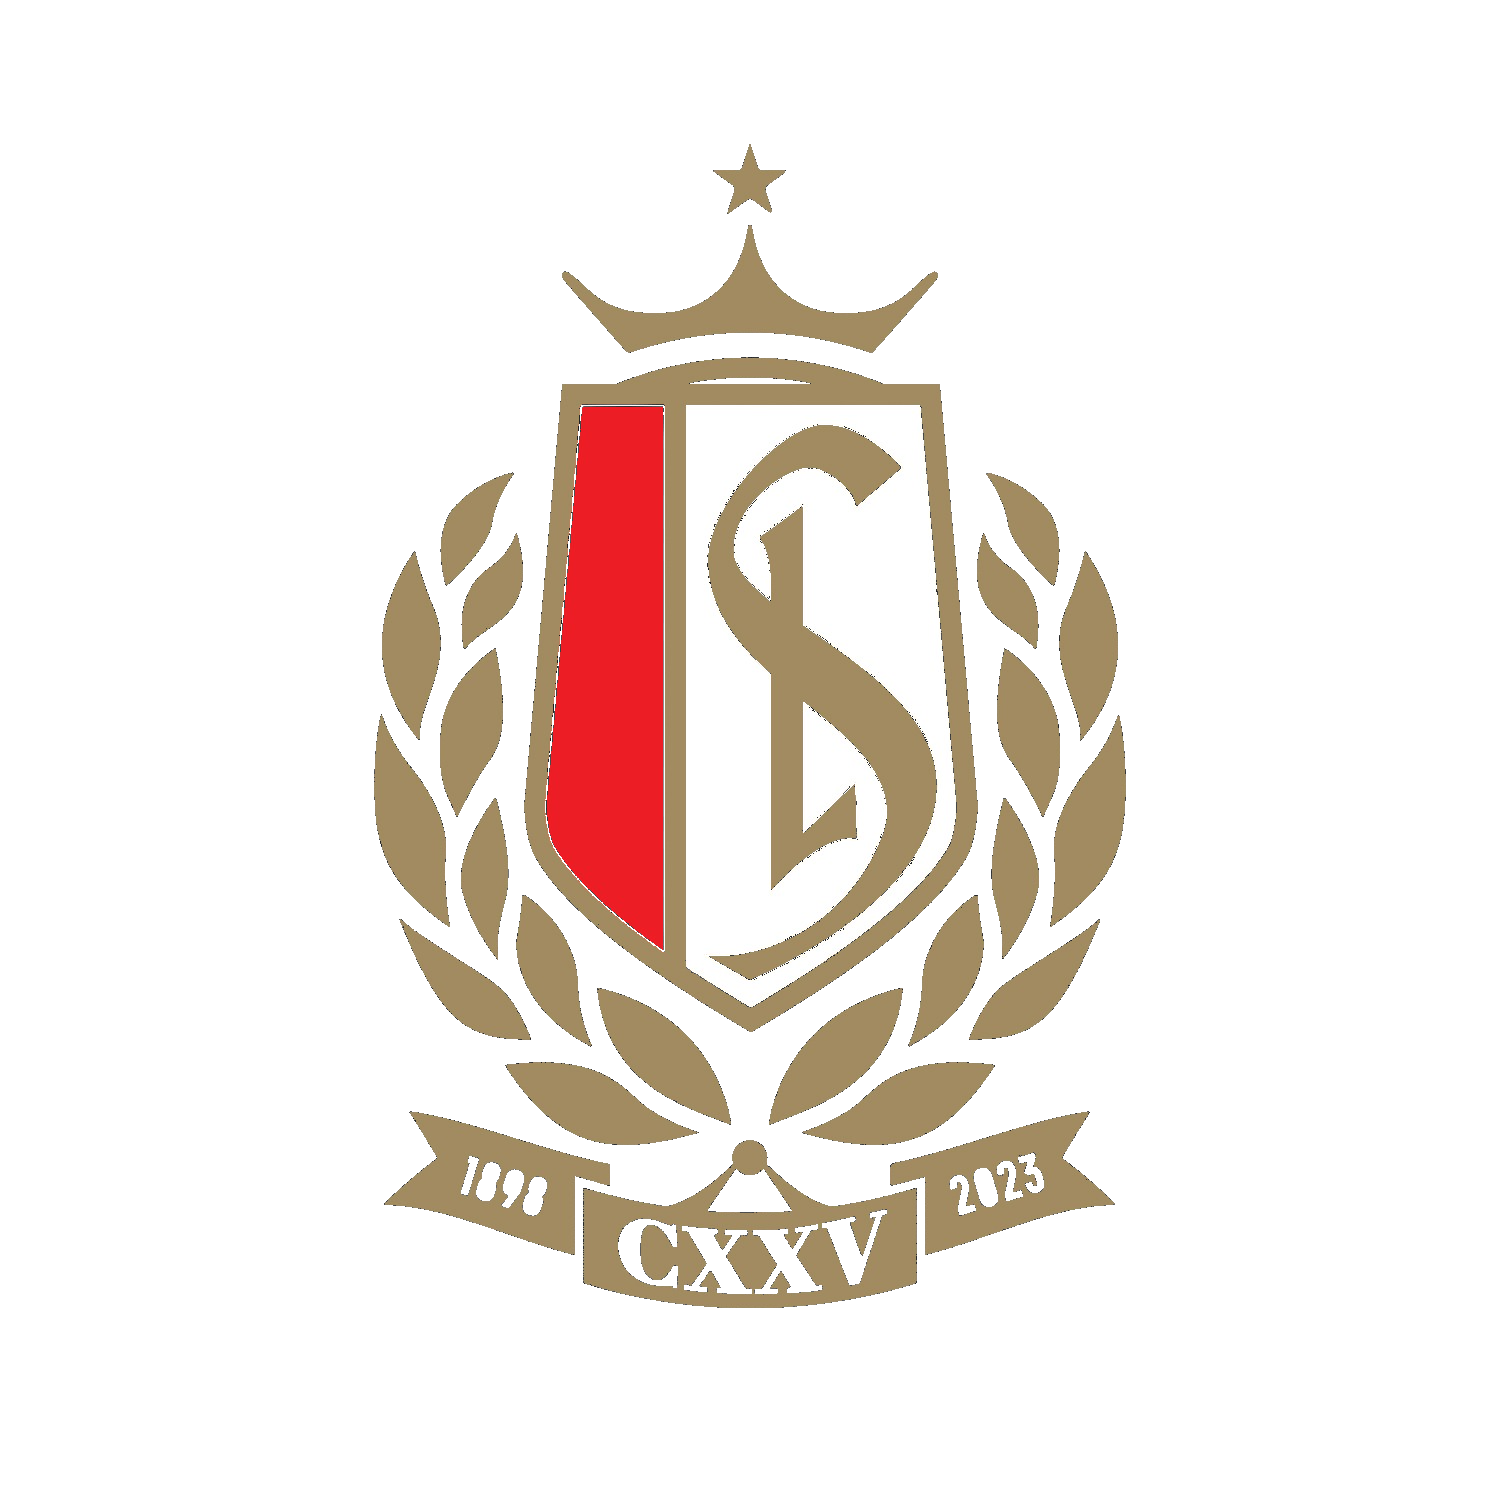 Standard de Liège - RSC Anderlecht : infos pratiques